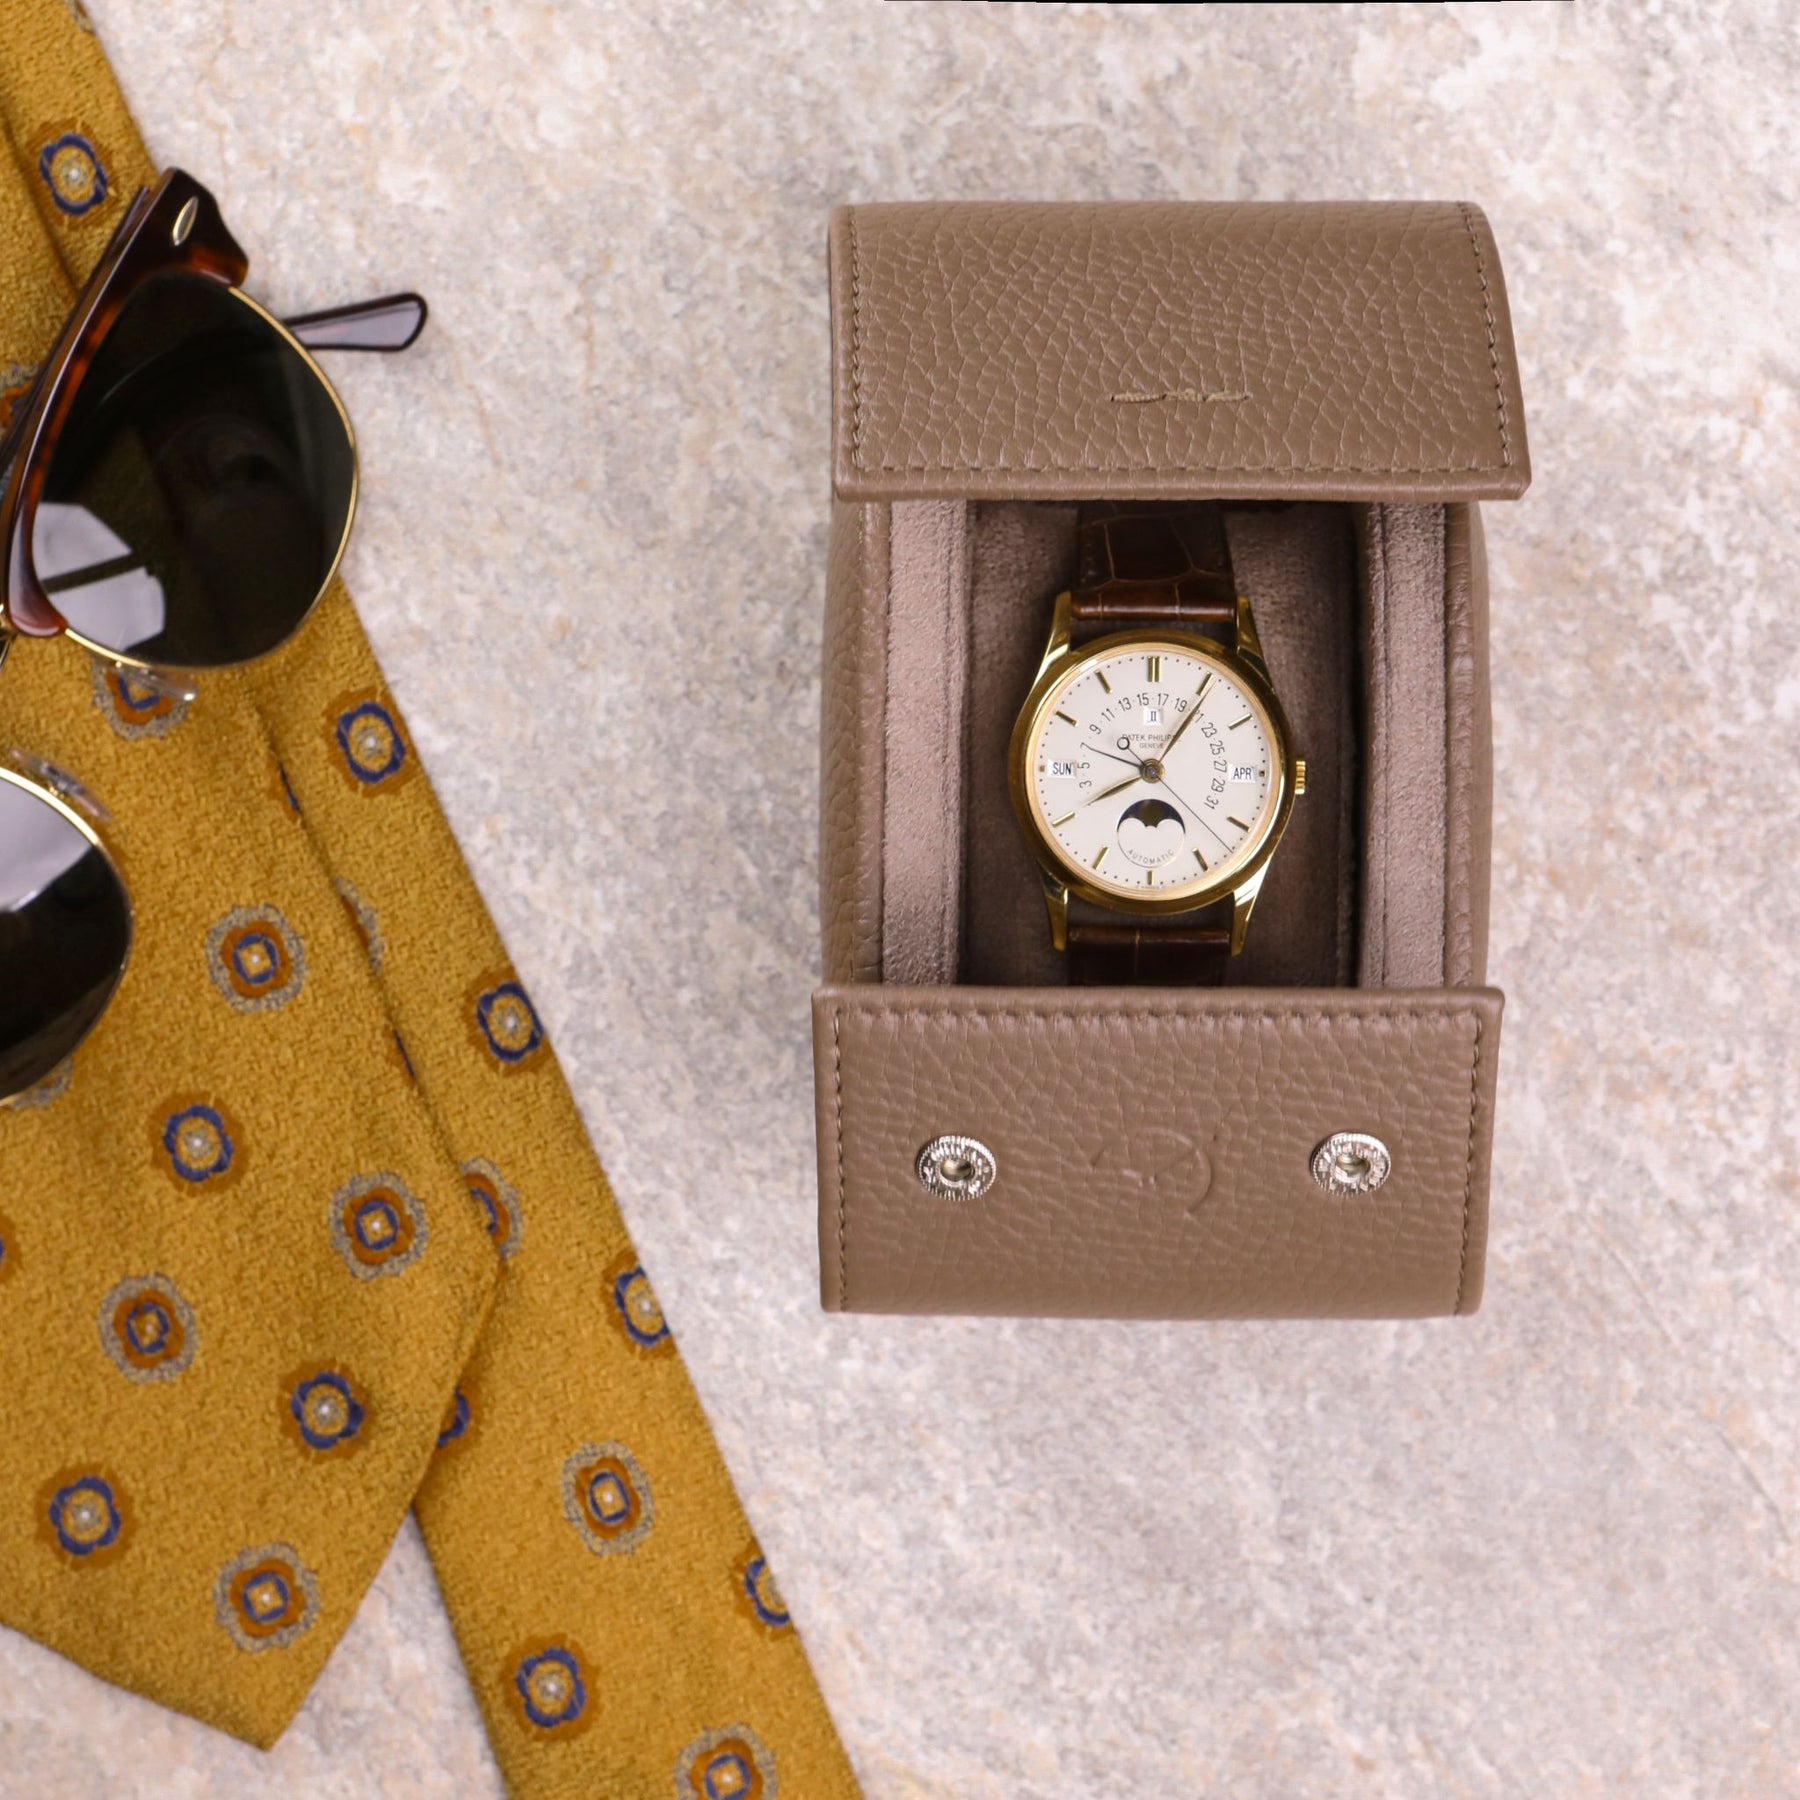 Rotolo porta orologio color tortora con Patek Philippe calendario al suo interno e occhiali vintage e cravatta sul lato sinistro